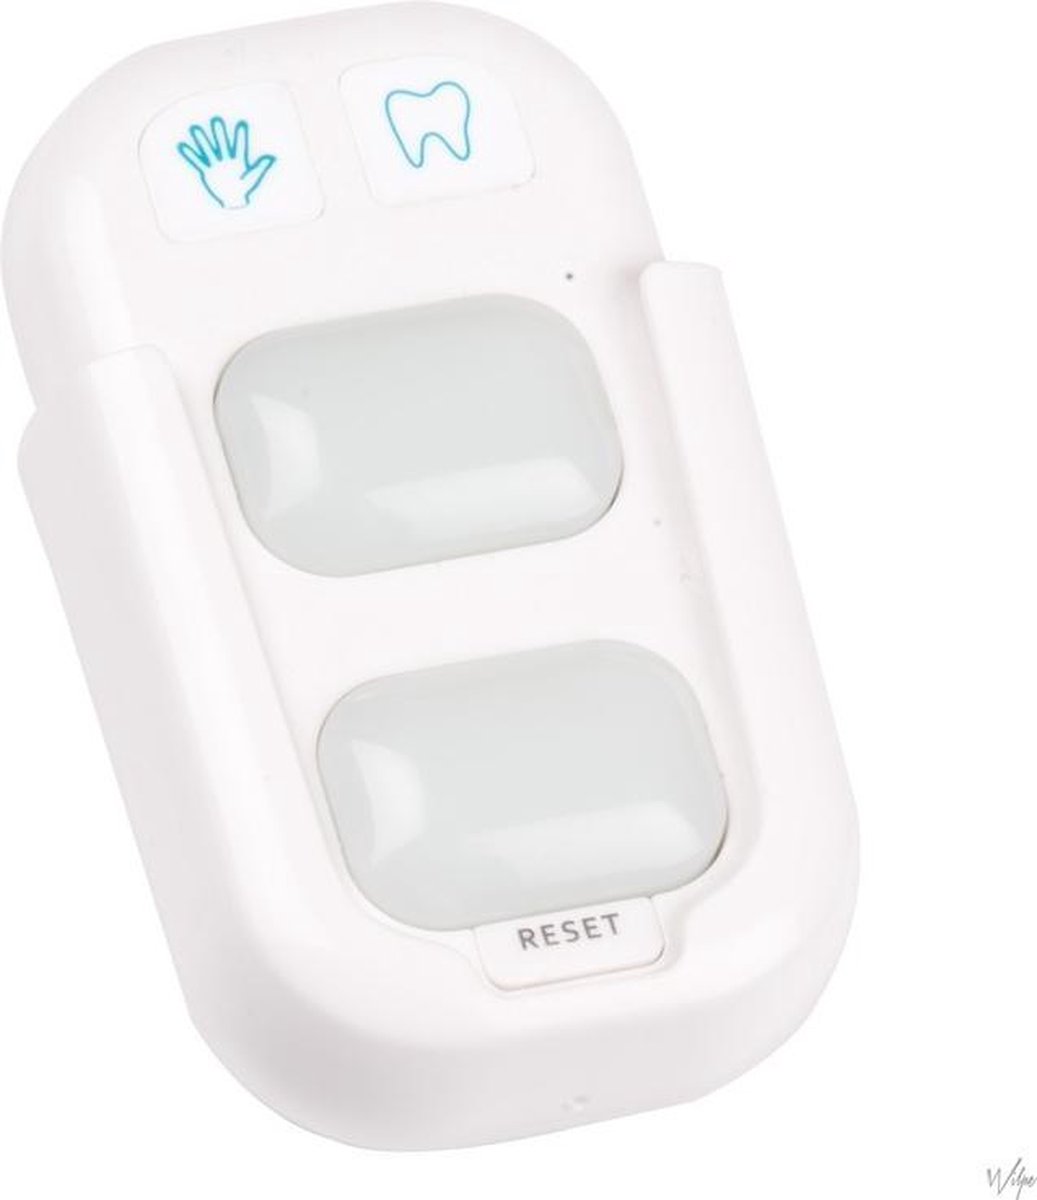 Proline Personal Trainer LED Dit handige product geeft namelijk de juiste was- en poetstijd aan. Goede mondverzorging is erg belangrijk en zorgt voor een frisse adem en een gezond gebit. En wist u dat u minimaal 2 minuten moet poetsen?